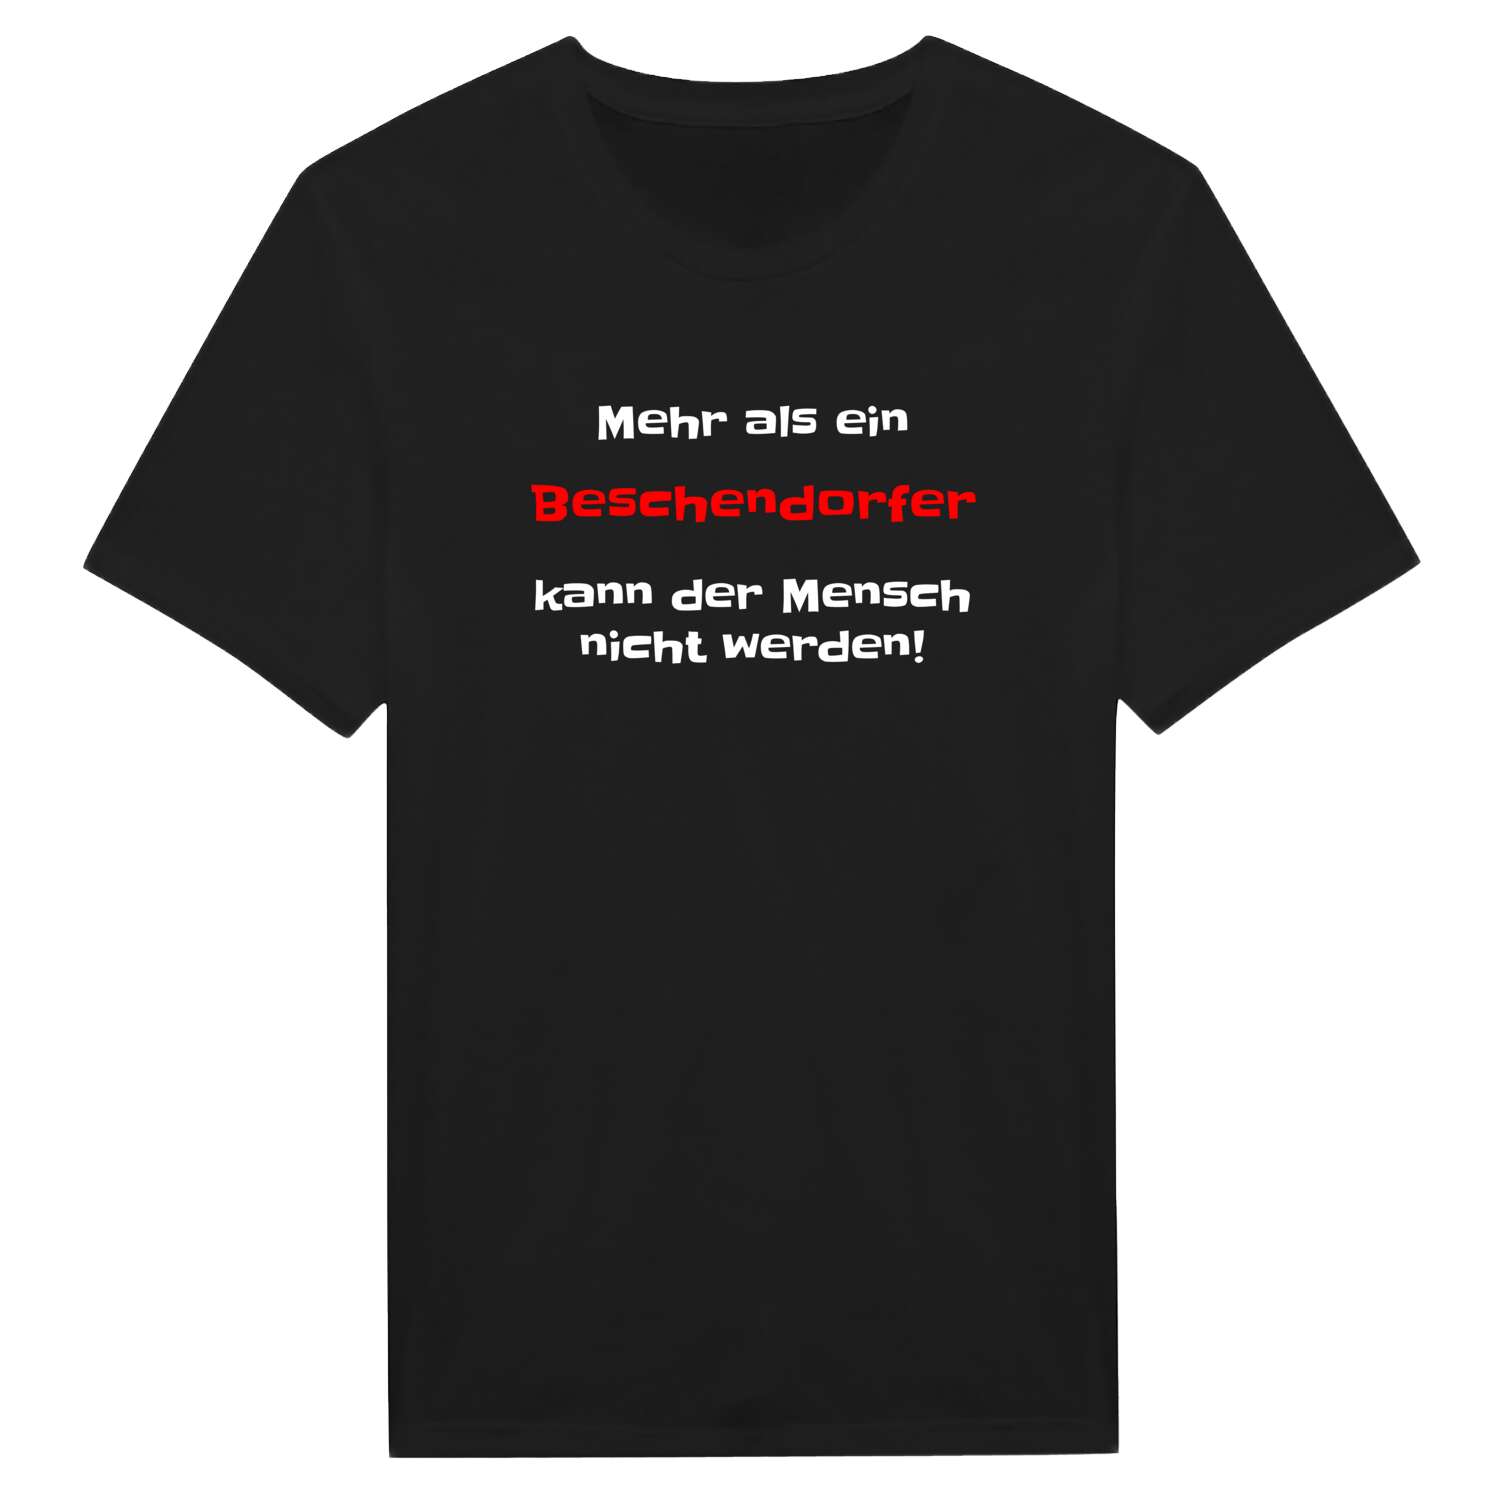 Beschendorf T-Shirt »Mehr als ein«